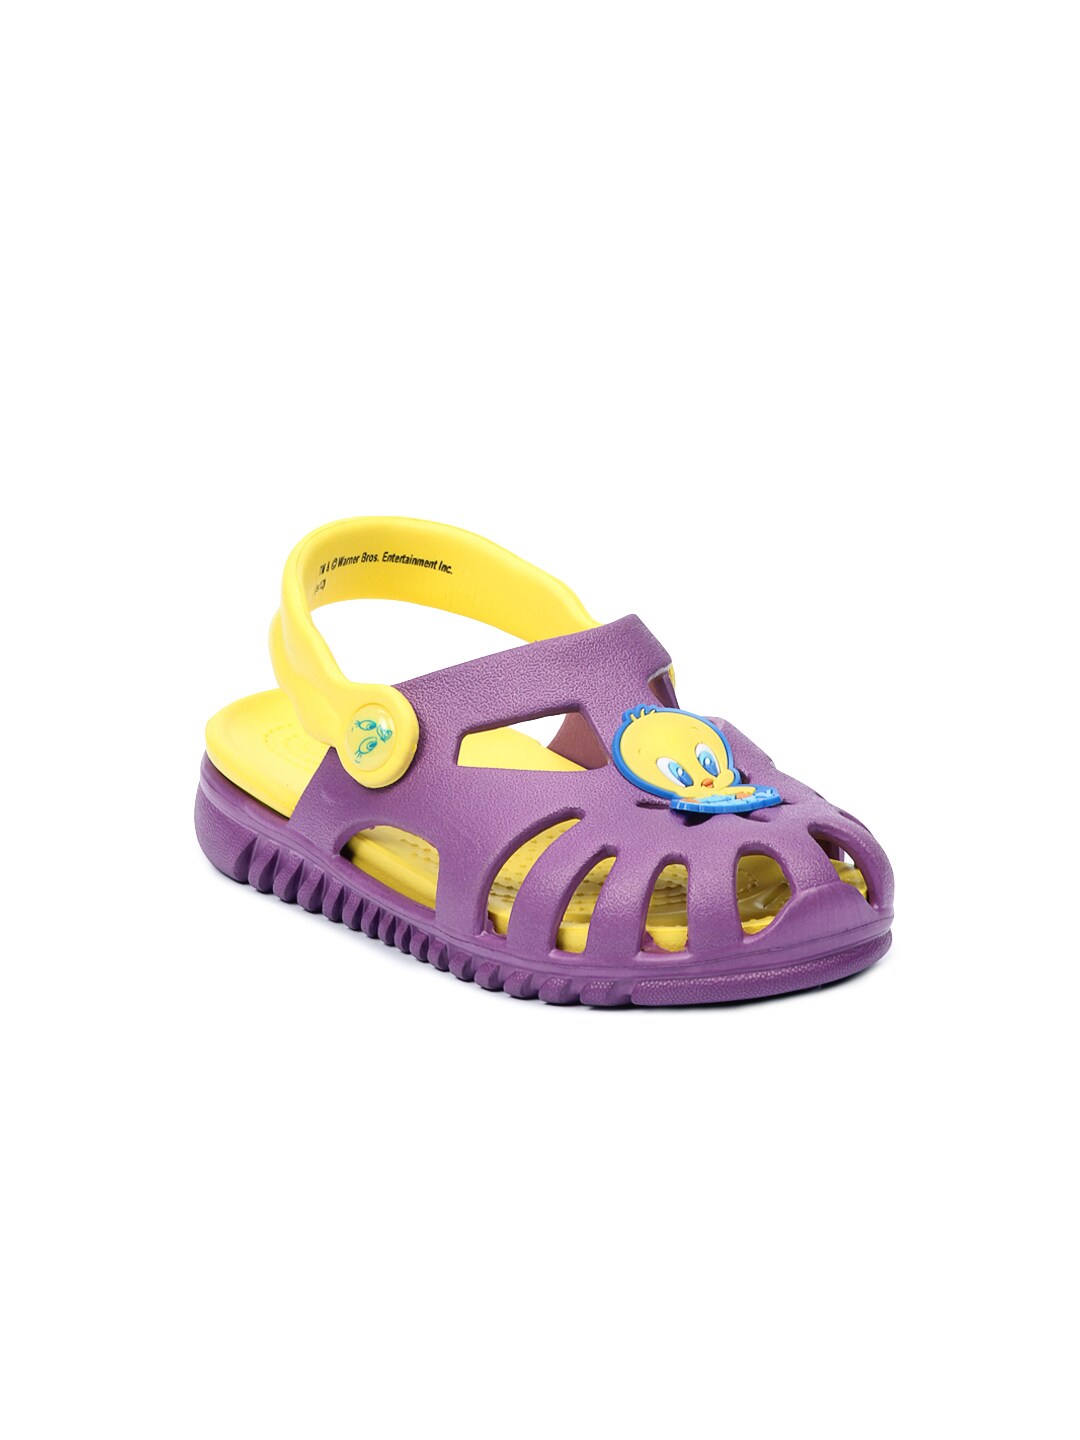 Warner Bros Kids Unisex Purple Sandals